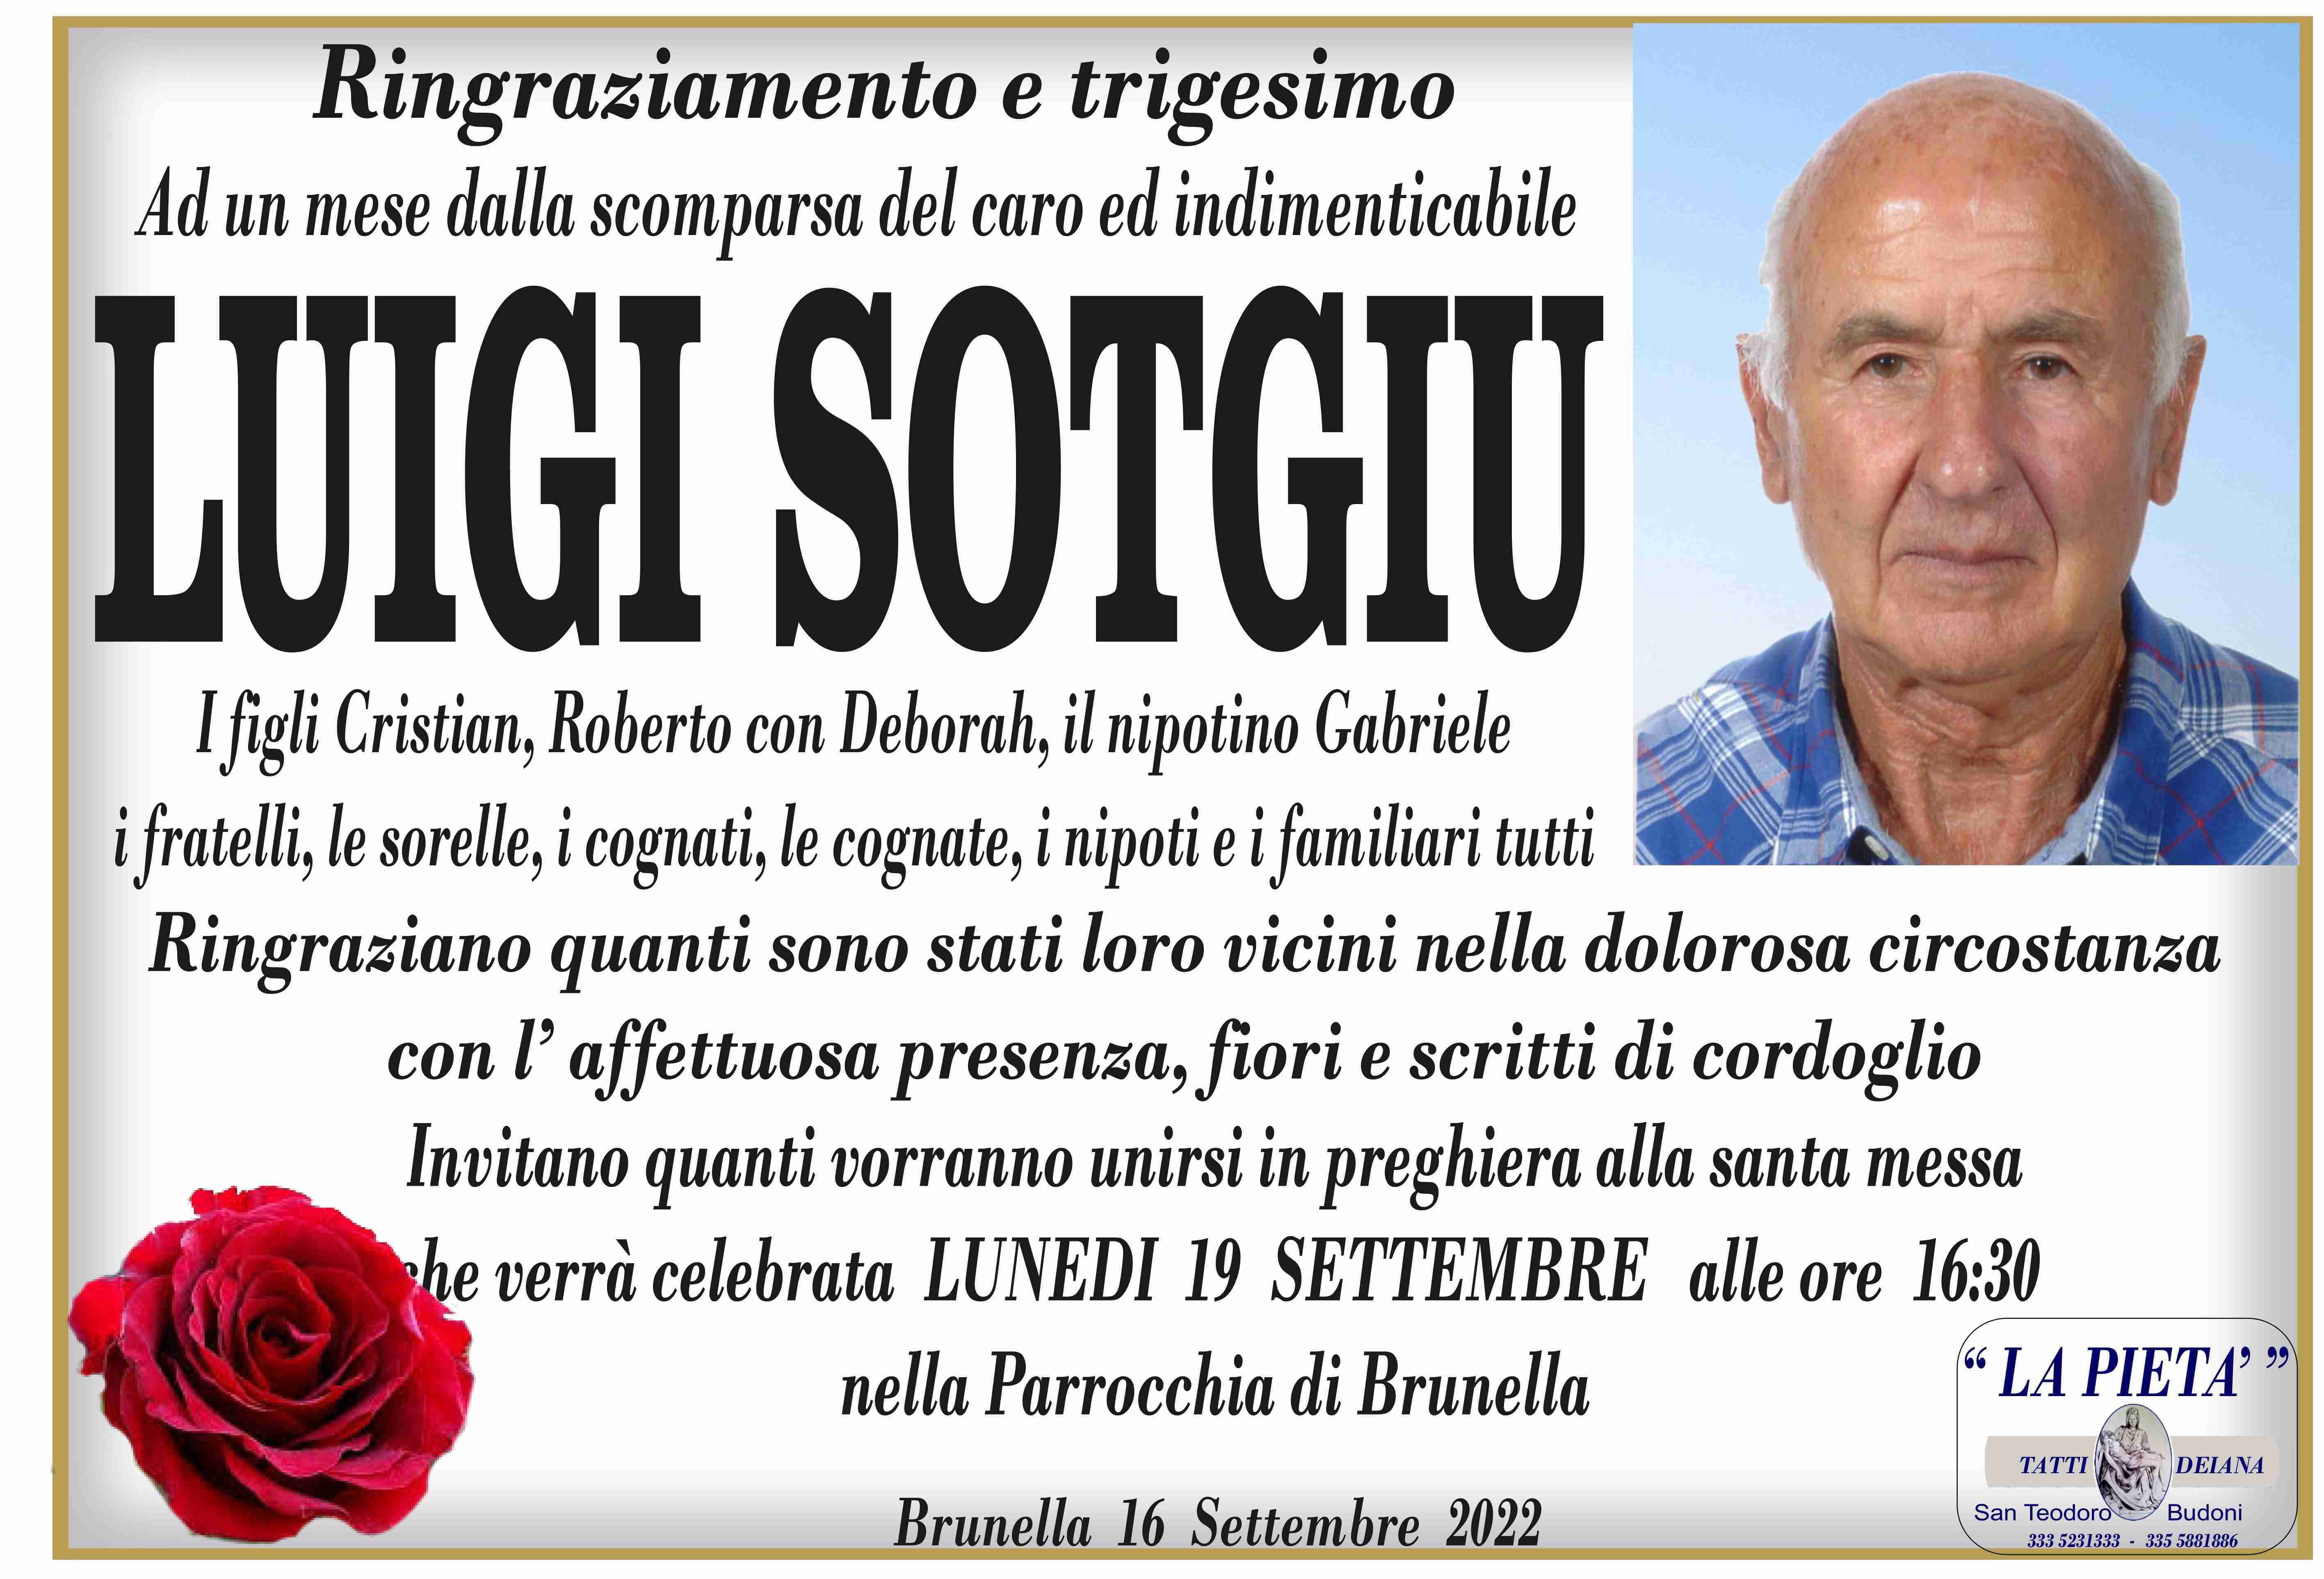 Luigi Sotgiu